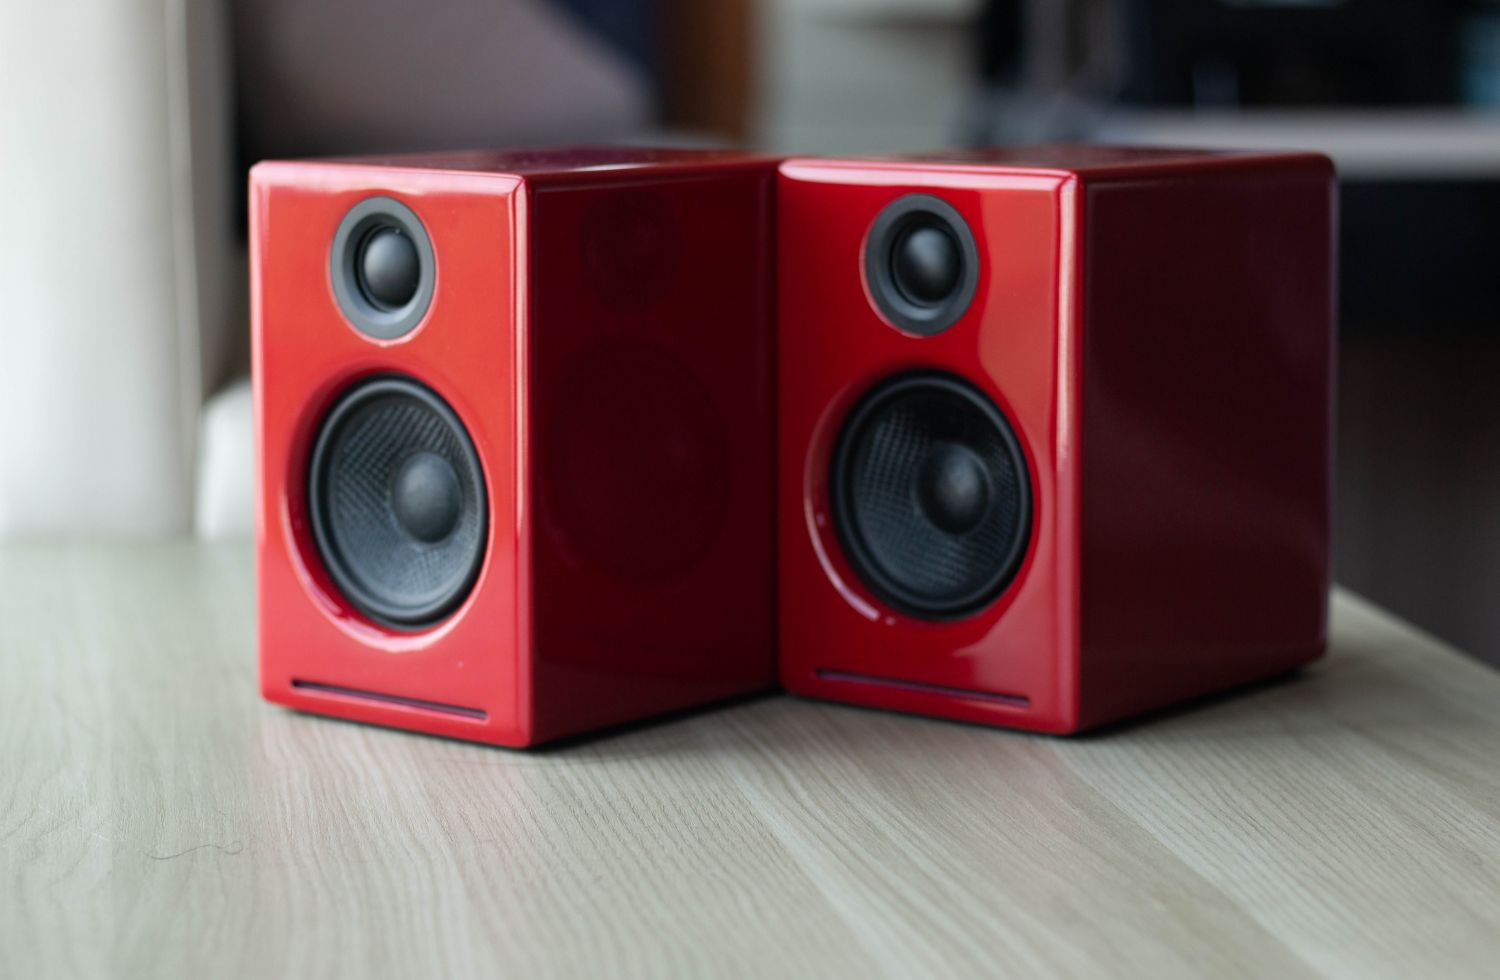 Geek Review: Audioengine A2+ Wireless Stereo Speakers   Geek Culture